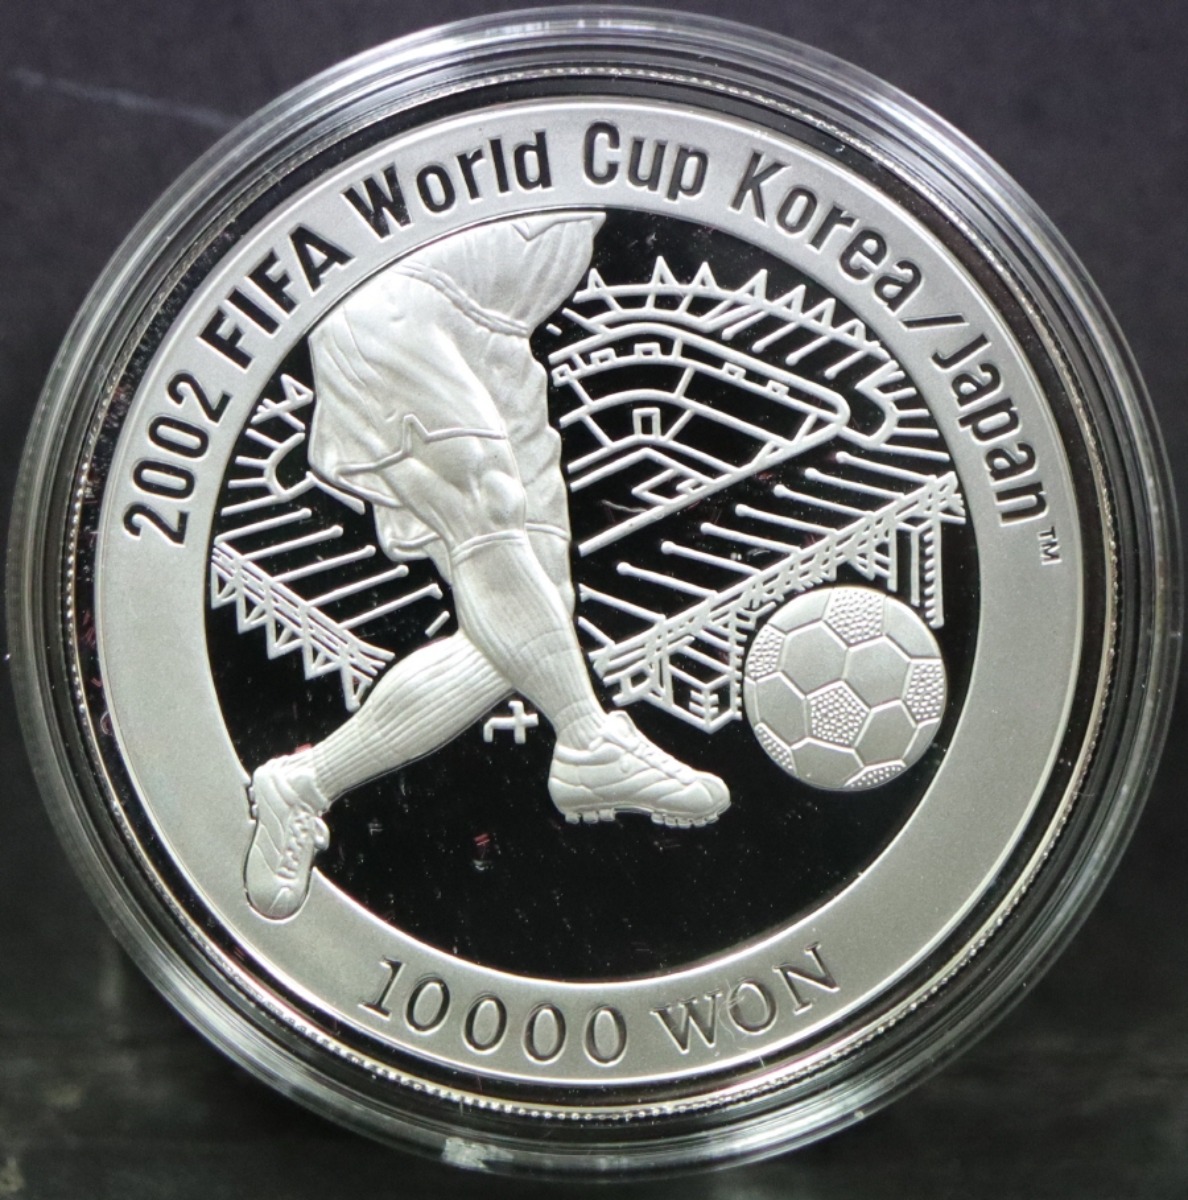 한국 2002년 한일 월드컵 은화 - 울산 월드컵 경기장 도안